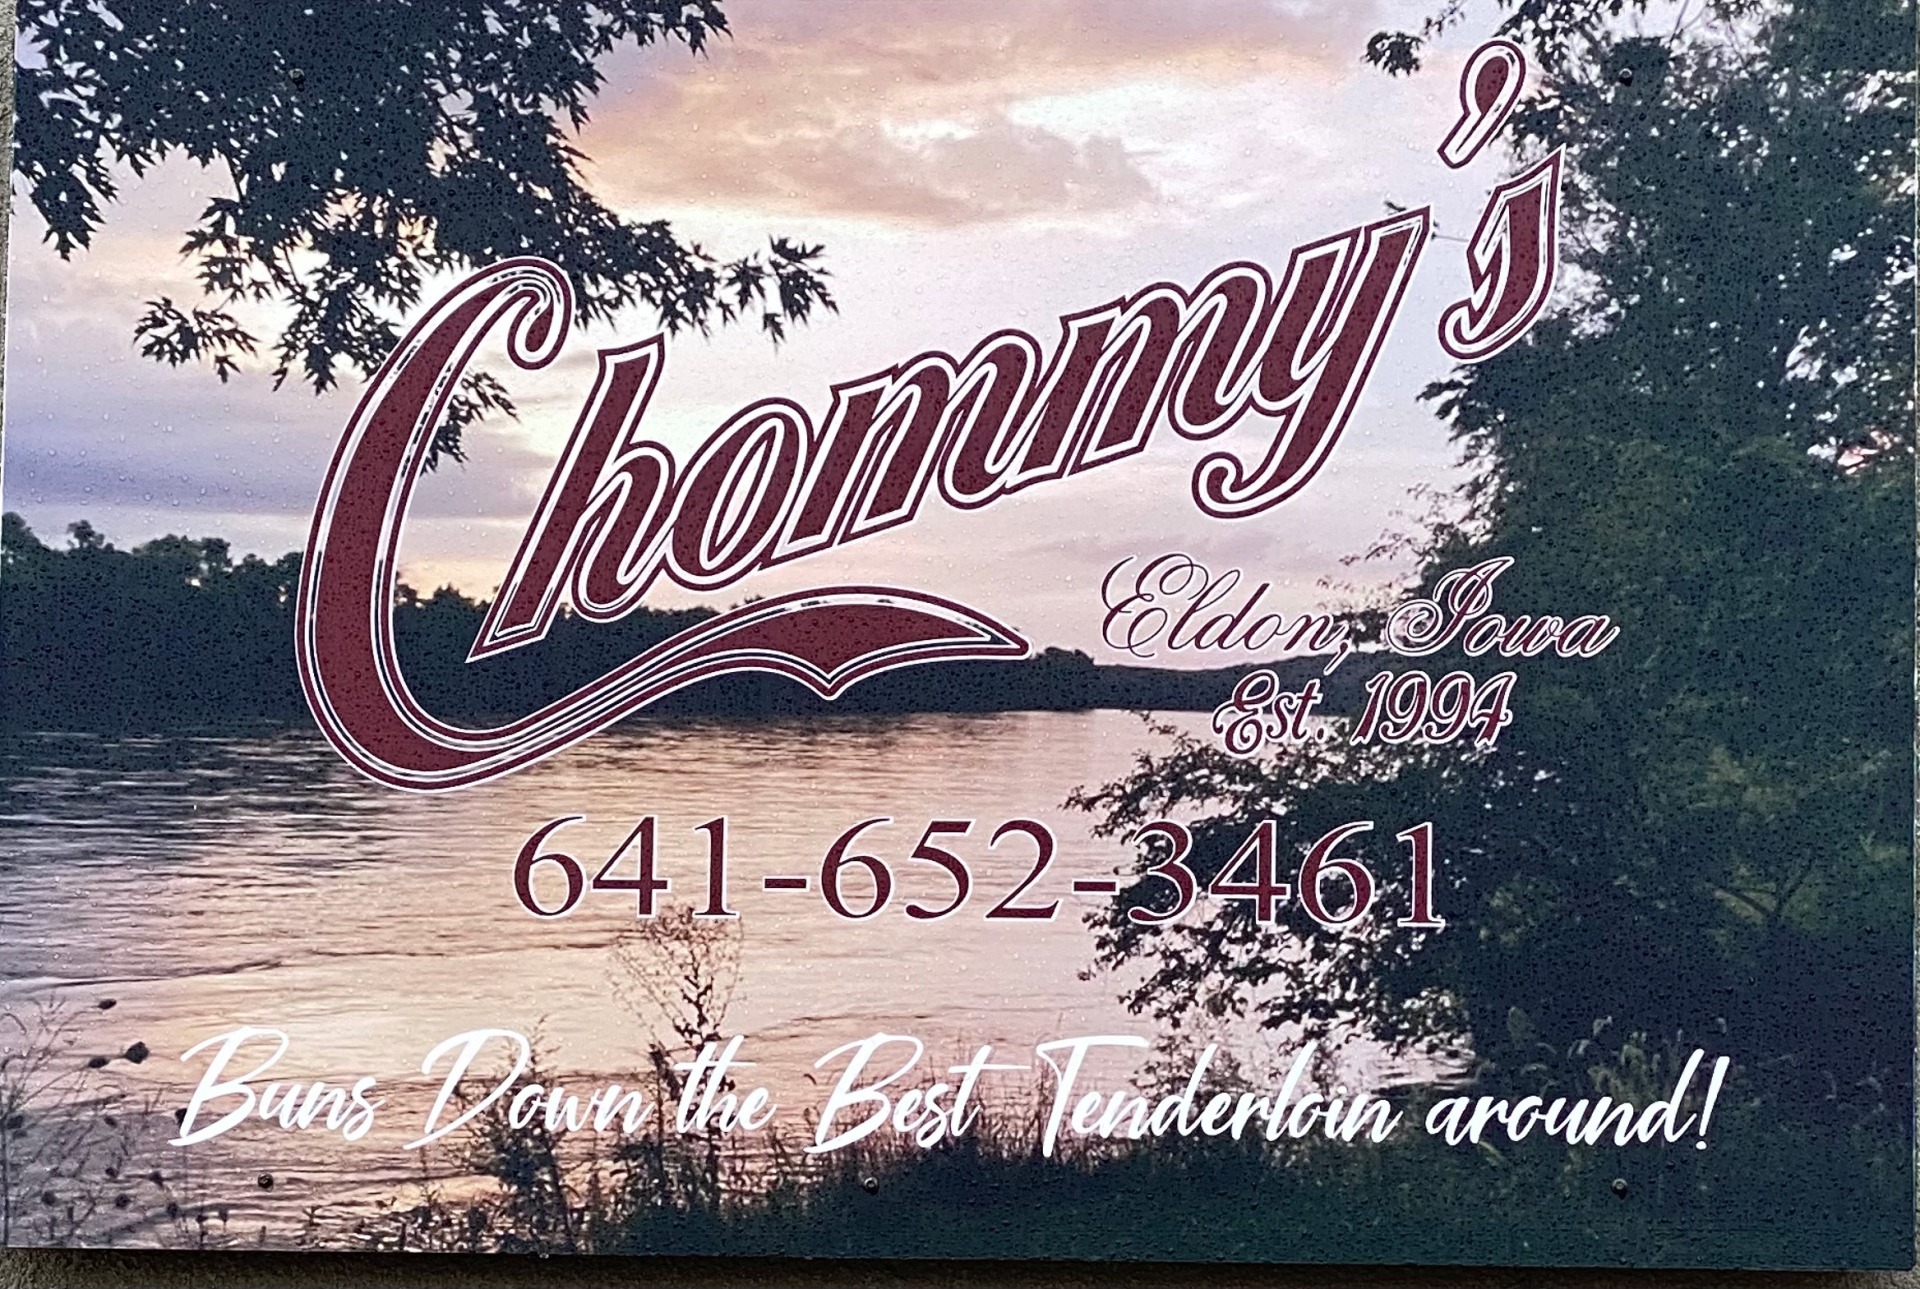 Chommy's. Eldon, Iowa, Est. 1994, 641-652-3461, Buns Down the Best Tenderloin Around!